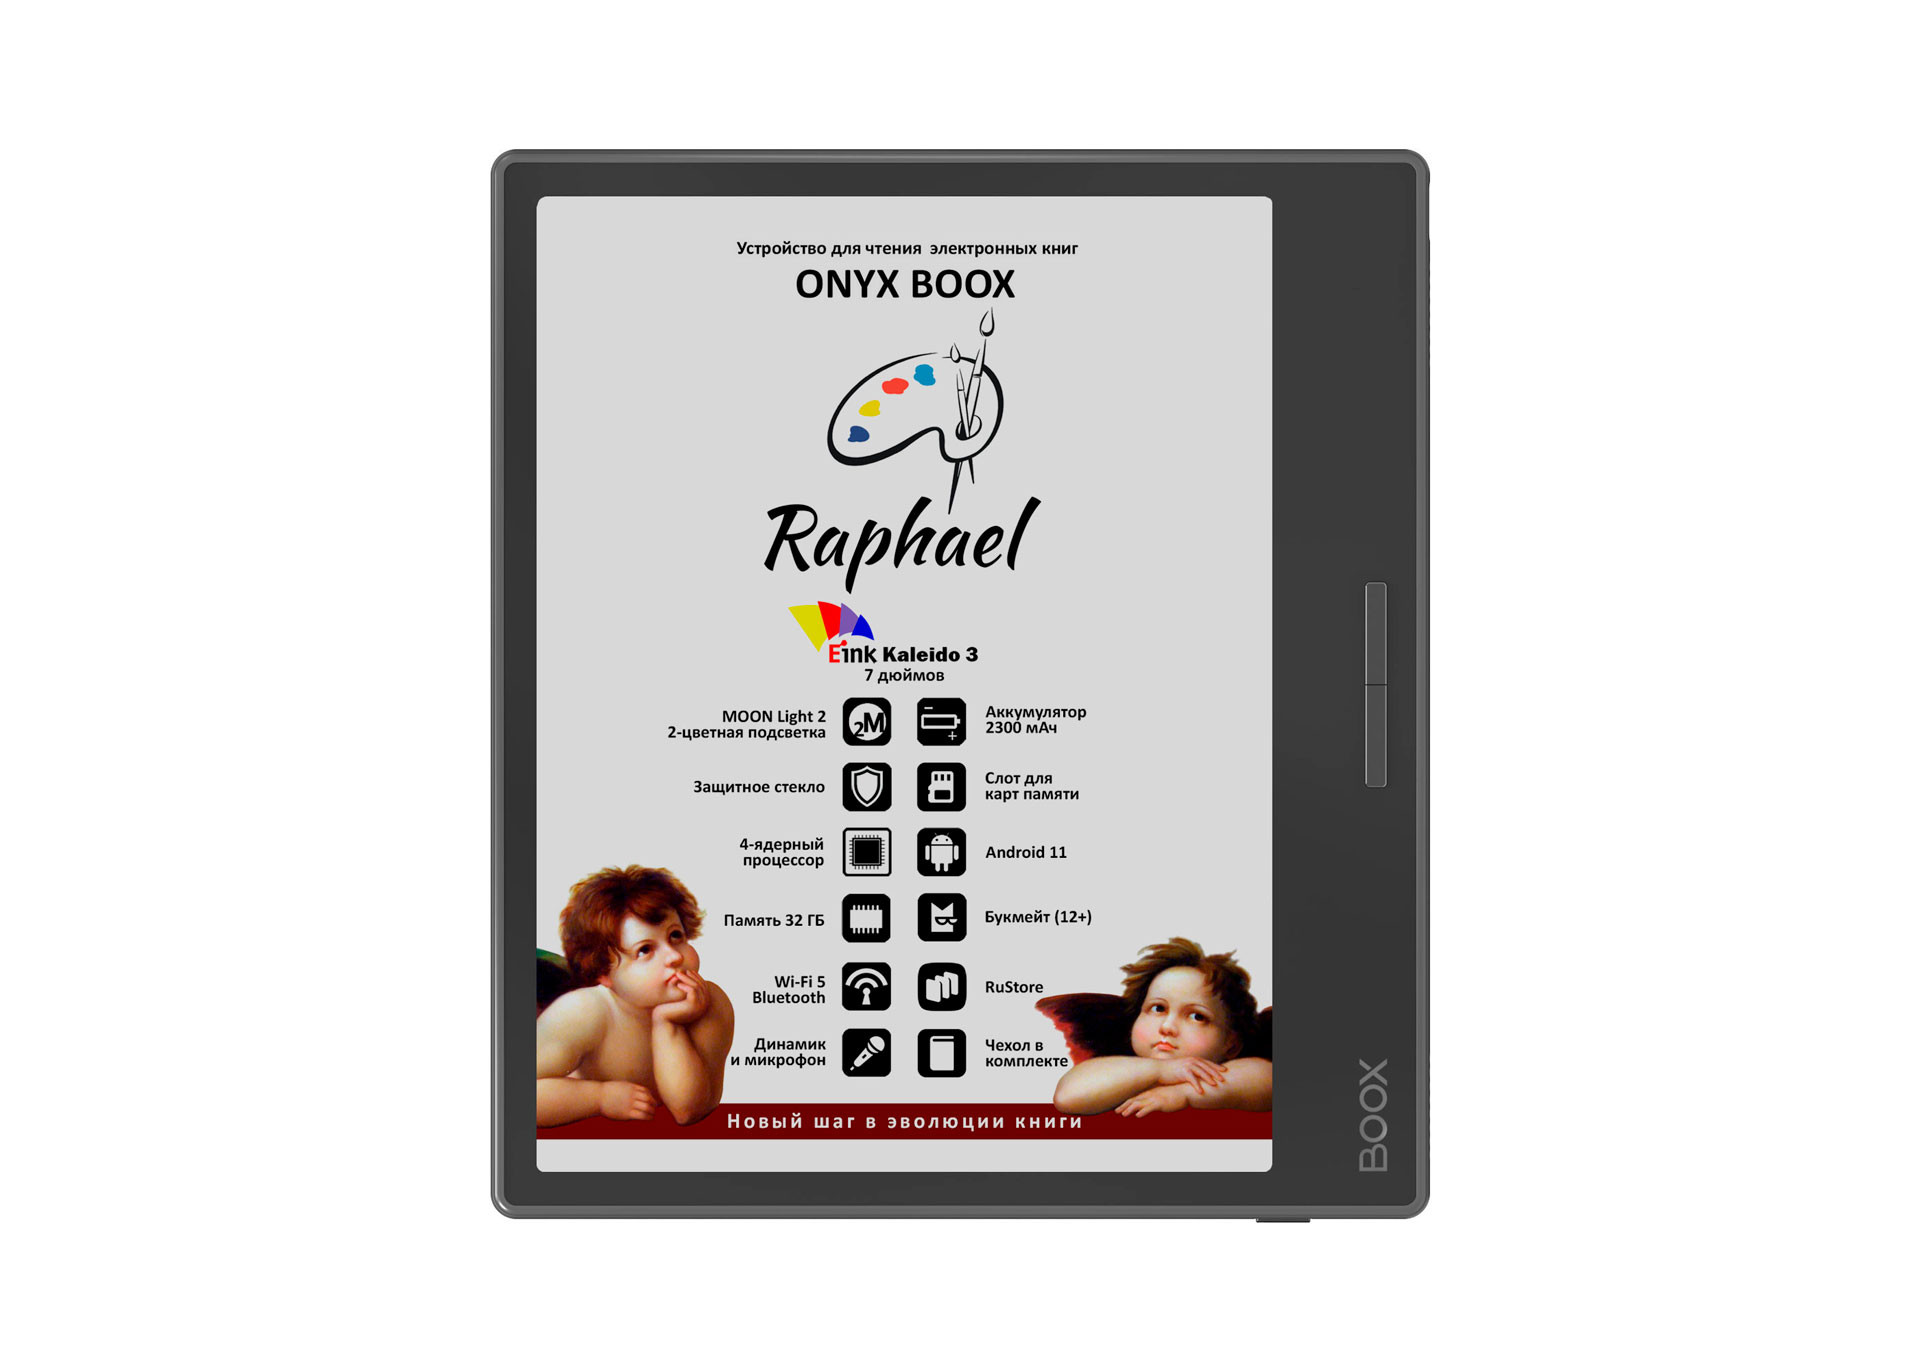 ONYX BOOX представила Raphael  цветной ридер оптимального размера